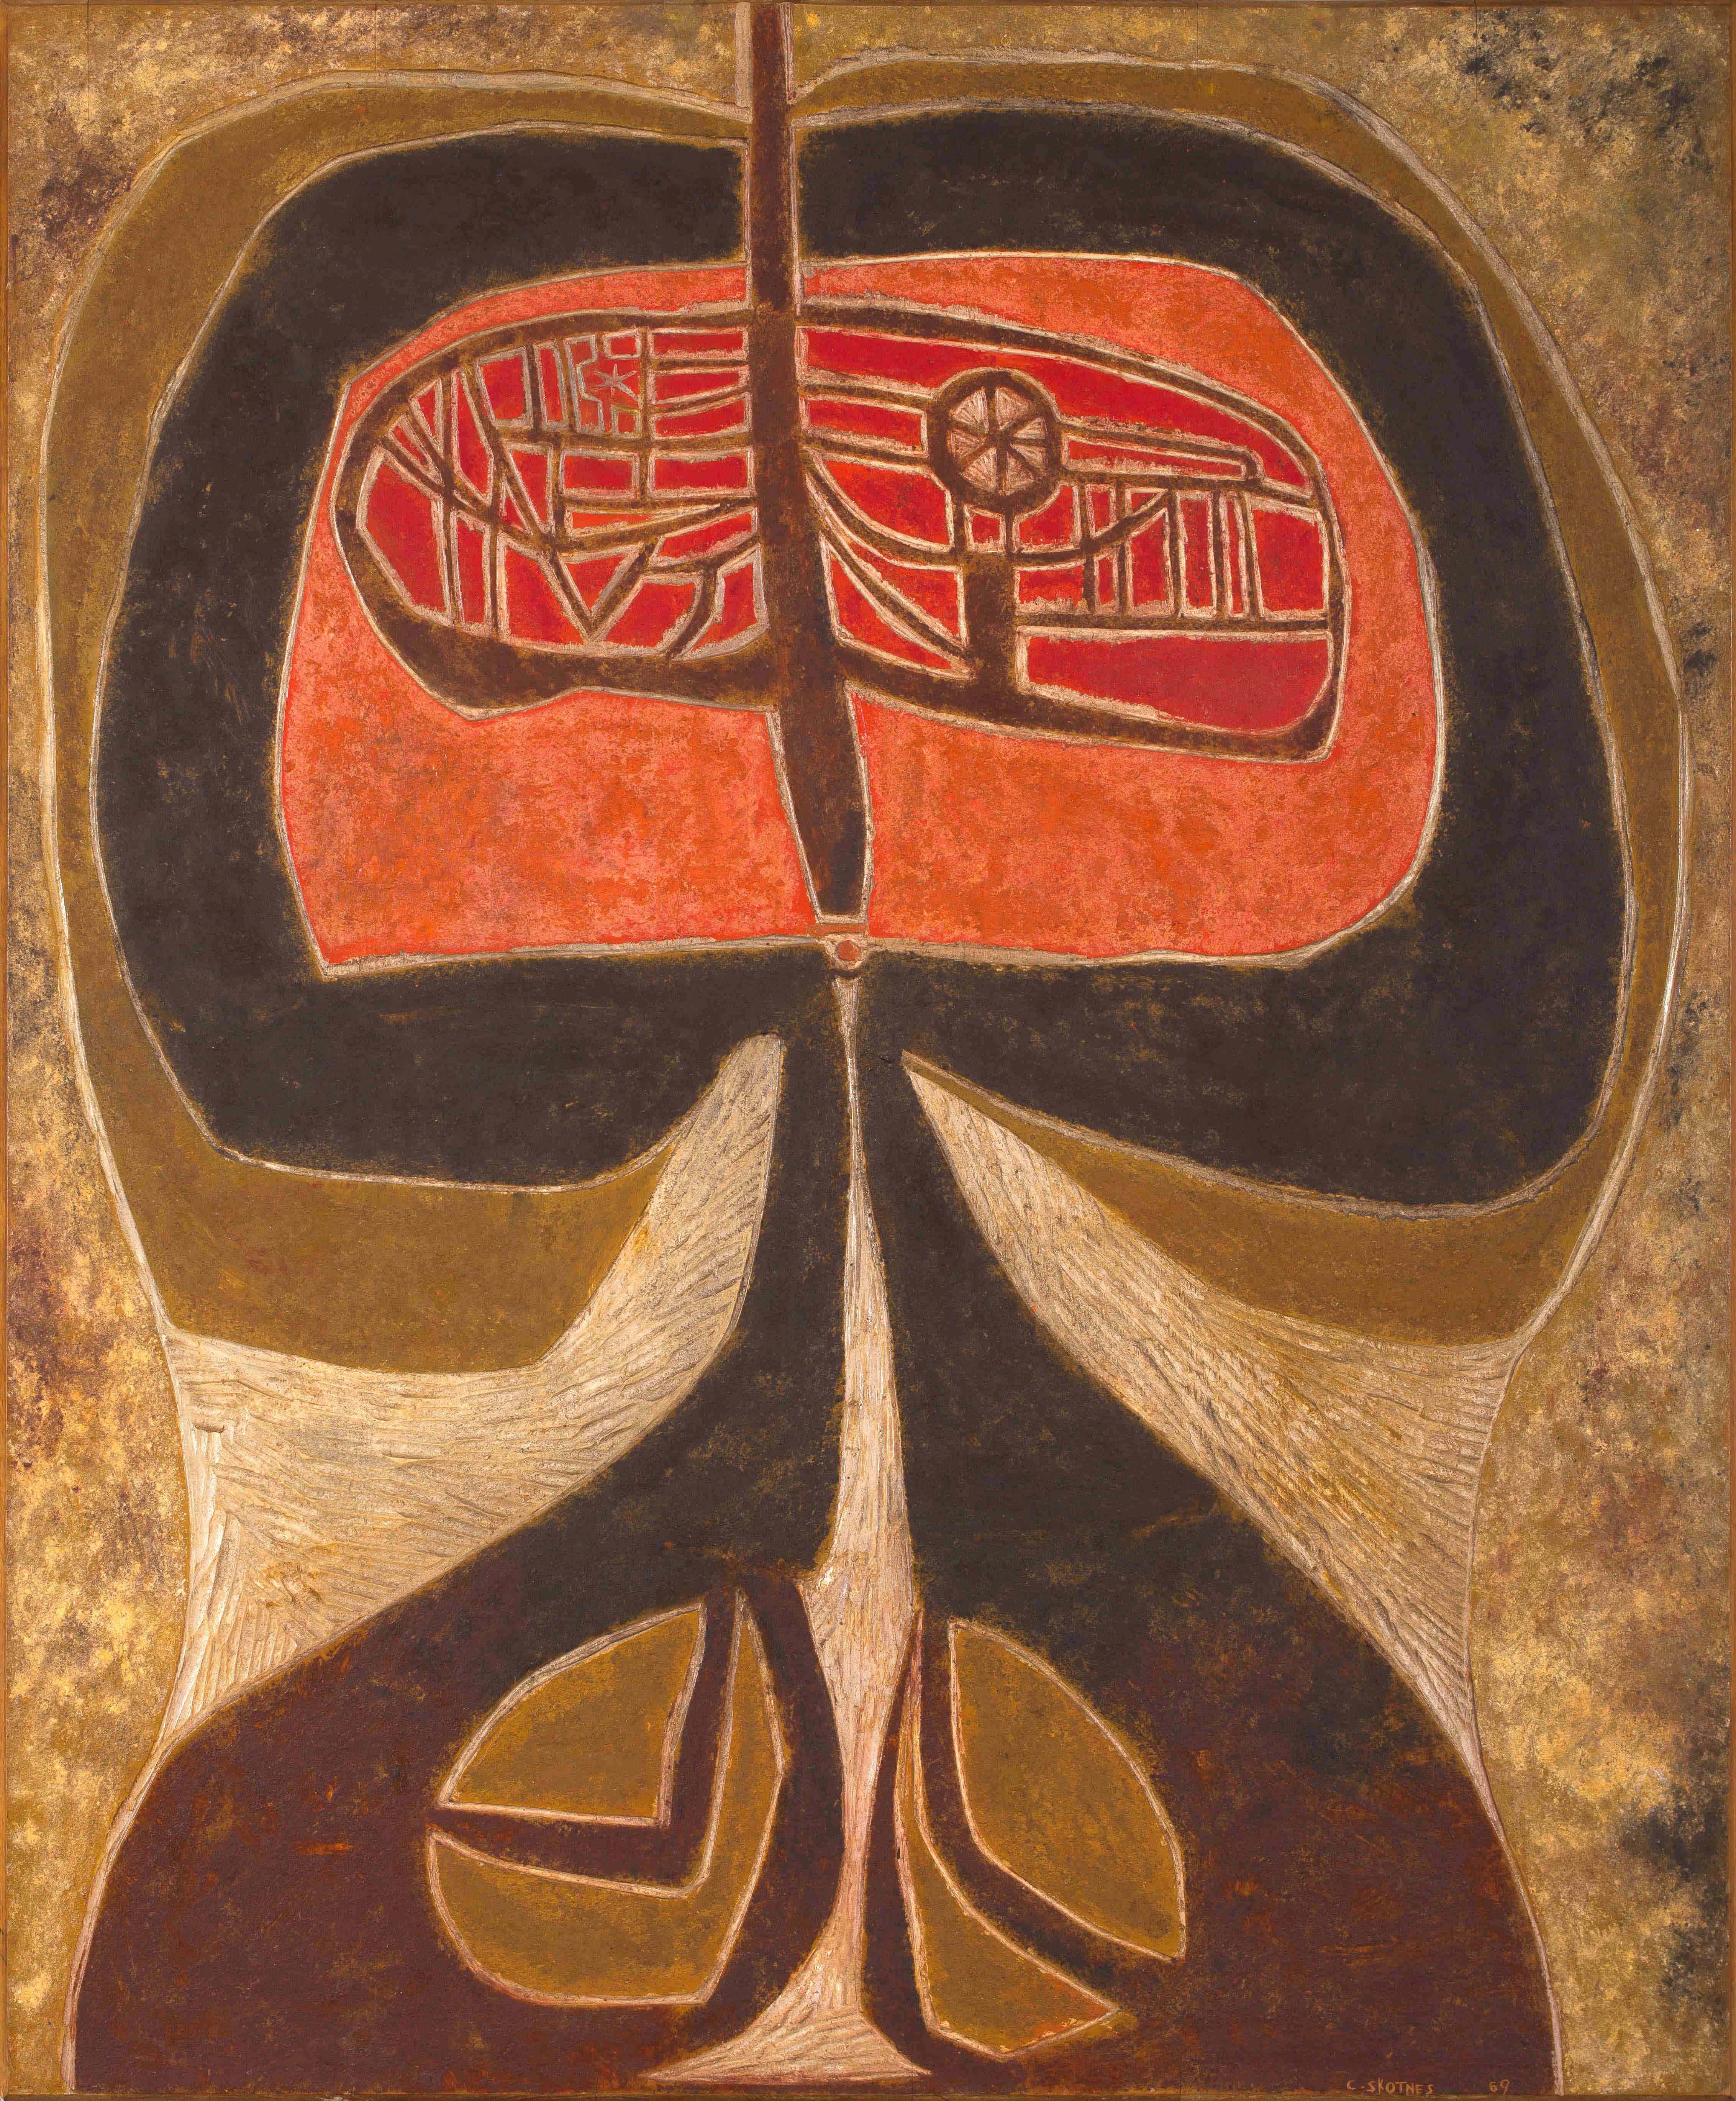 Head by Cecil Skotnes, dated 1969